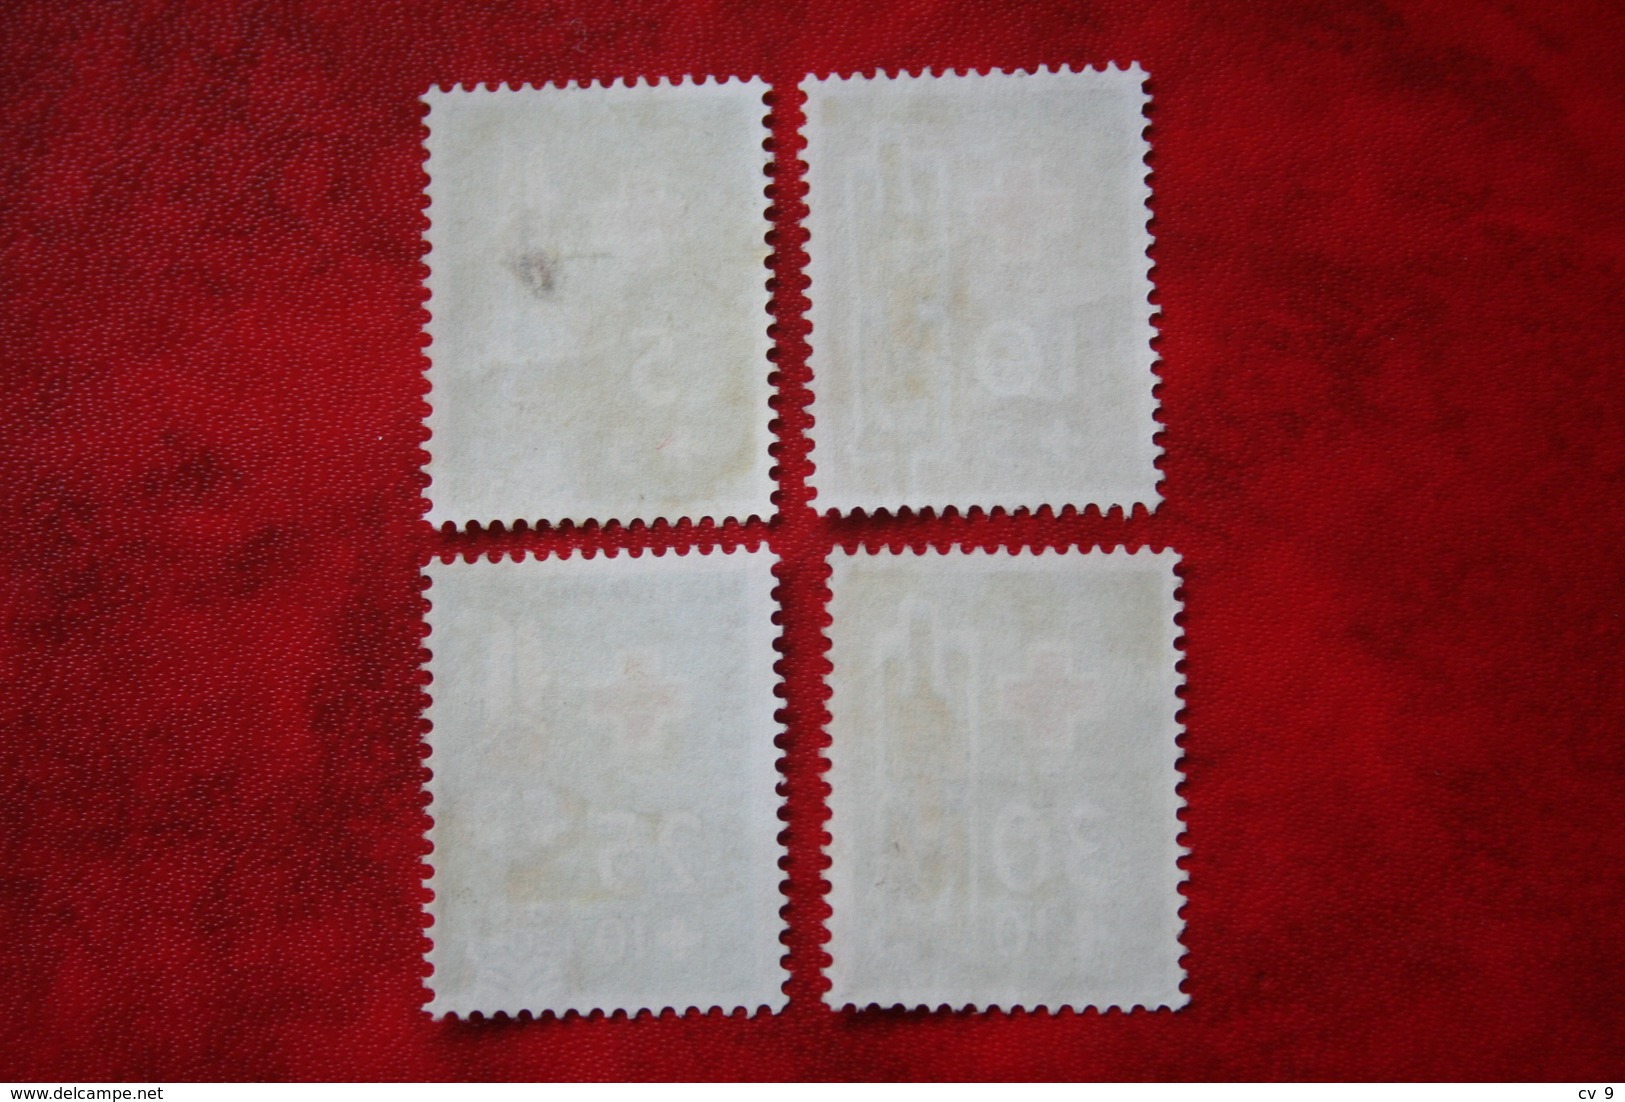 Rode Kruiszegels ; NVPH 49-52; 1958 MH / Ongebruikt NIEUW GUINEA / NIEDERLANDISCH NEUGUINEA / NETHERLANDS NEW GUINEA - Netherlands New Guinea